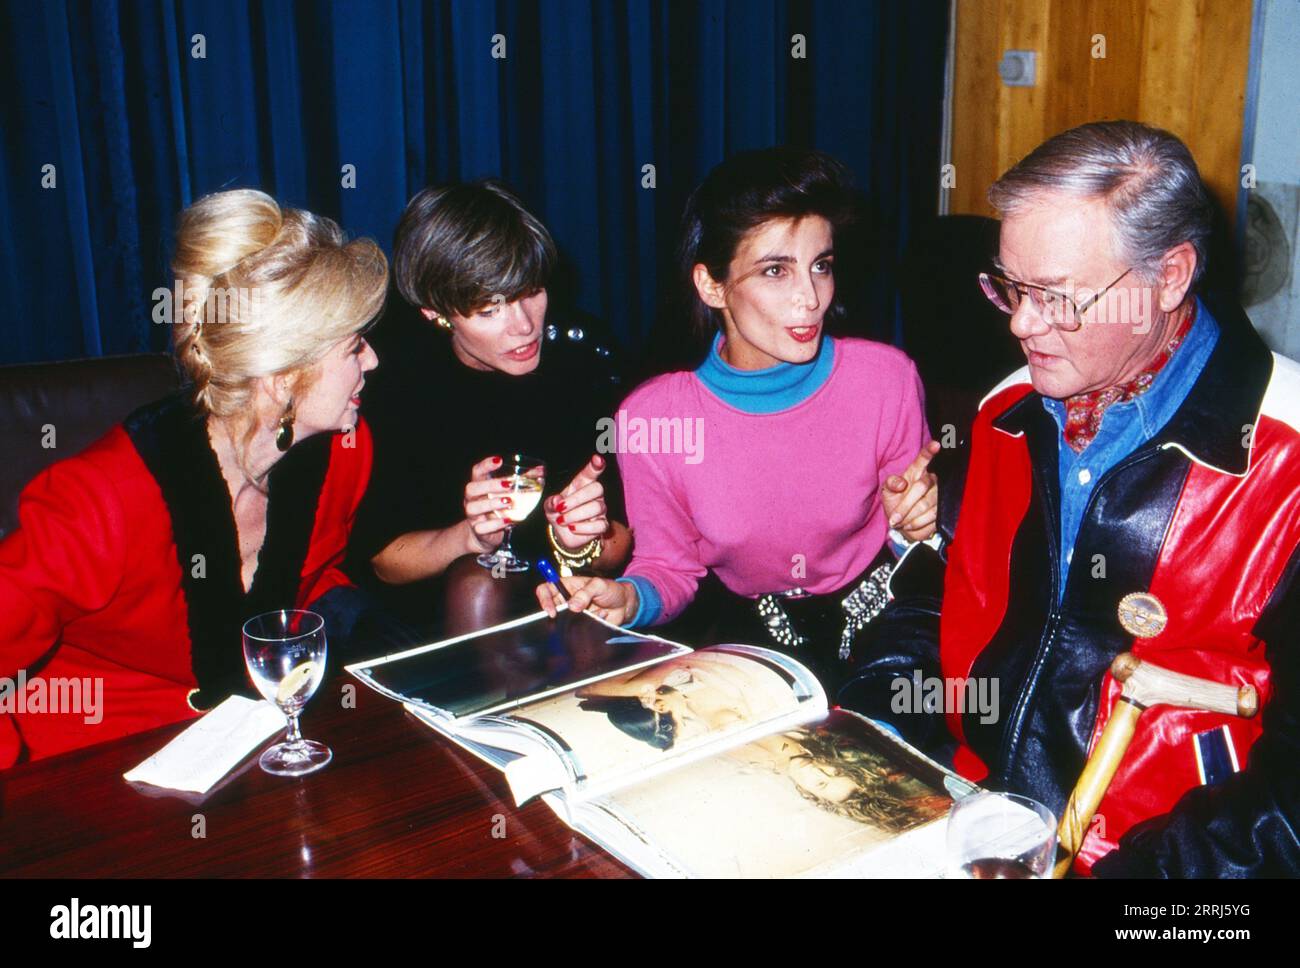 Larry Hagman, amerikanischer Schauspieler und bekannter J.R.-Darsteller aus der US-TV-serie Dallas, hier mit Christiane Krüger, C. Herriger und Maryam Sachs, circa 1991. Foto Stock